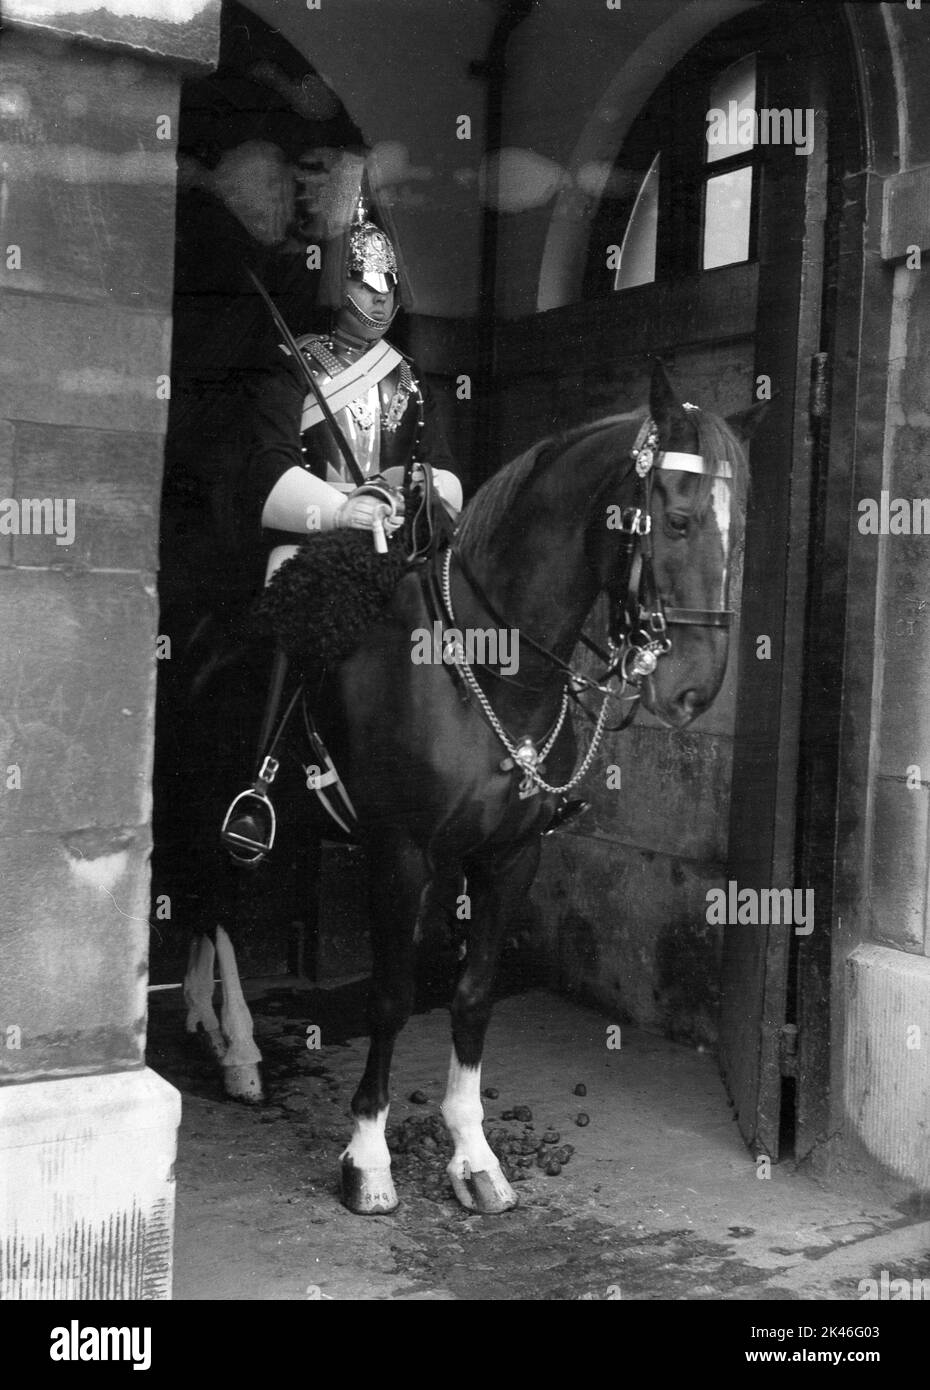 1958, historique, garde de vie du roi à cheval, en service de sentinelle auprès des gardes à cheval, l'entrée officielle du palais de Whitehall, Westminster, Londres, Angleterre, Royaume-Uni. Le gardien porté porte un uniforme complet, une tunique et un casque cérémonial connu sous le nom de casque Albert. Banque D'Images